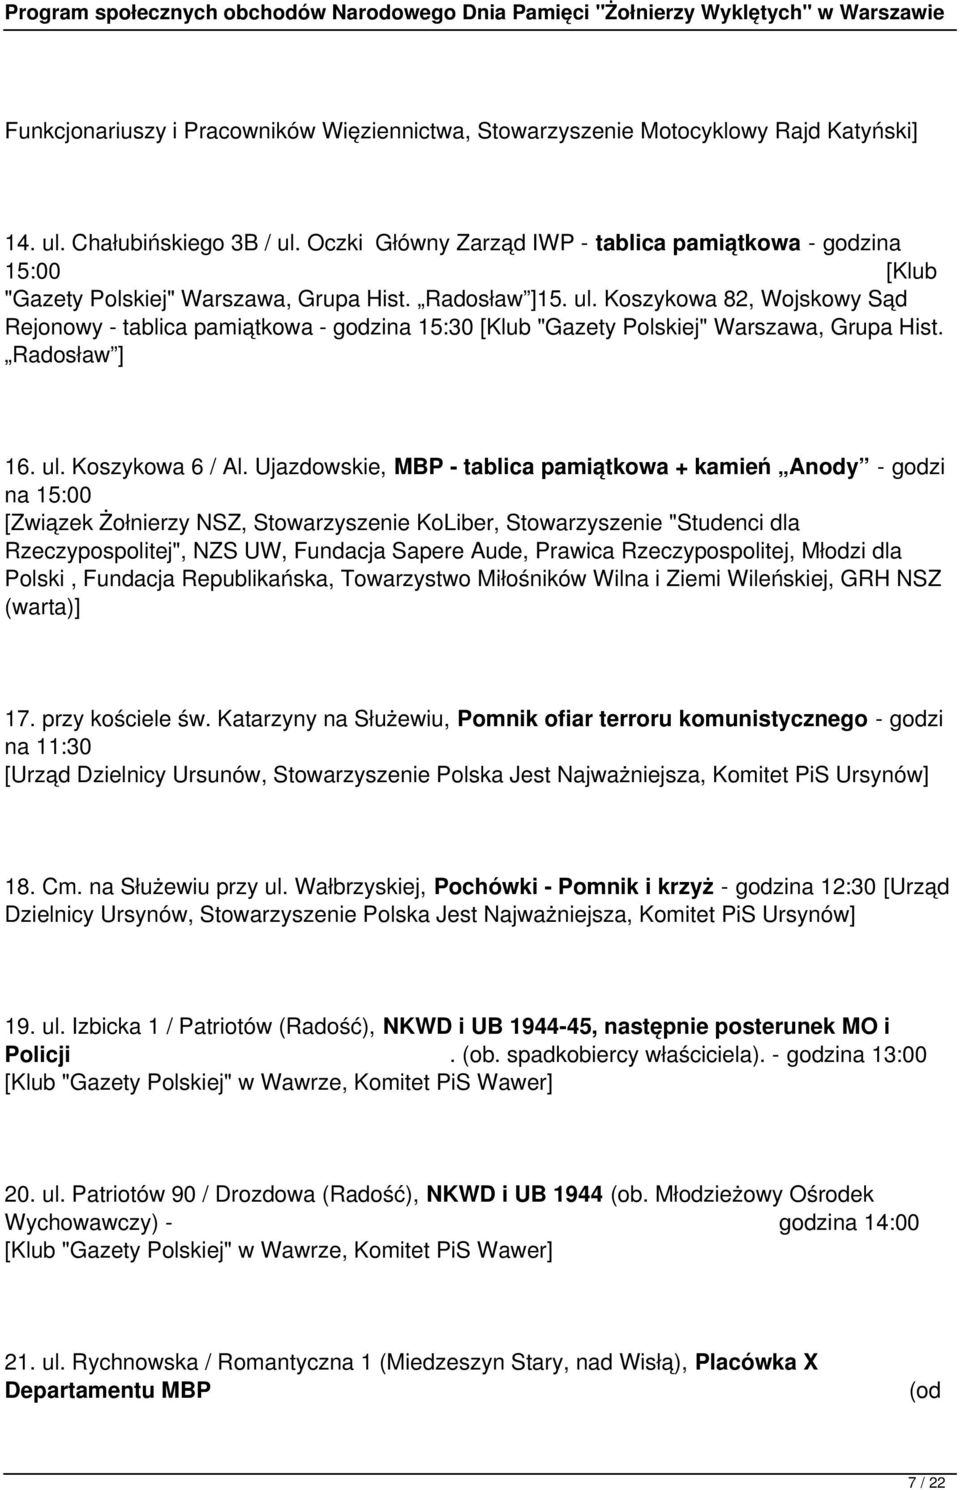 Koszykowa 82, Wojskowy Sąd Rejonowy - tablica pamiątkowa - godzina 15:30 [Klub "Gazety Polskiej" Warszawa, Grupa Hist. Radosław ] 16. ul. Koszykowa 6 / Al.